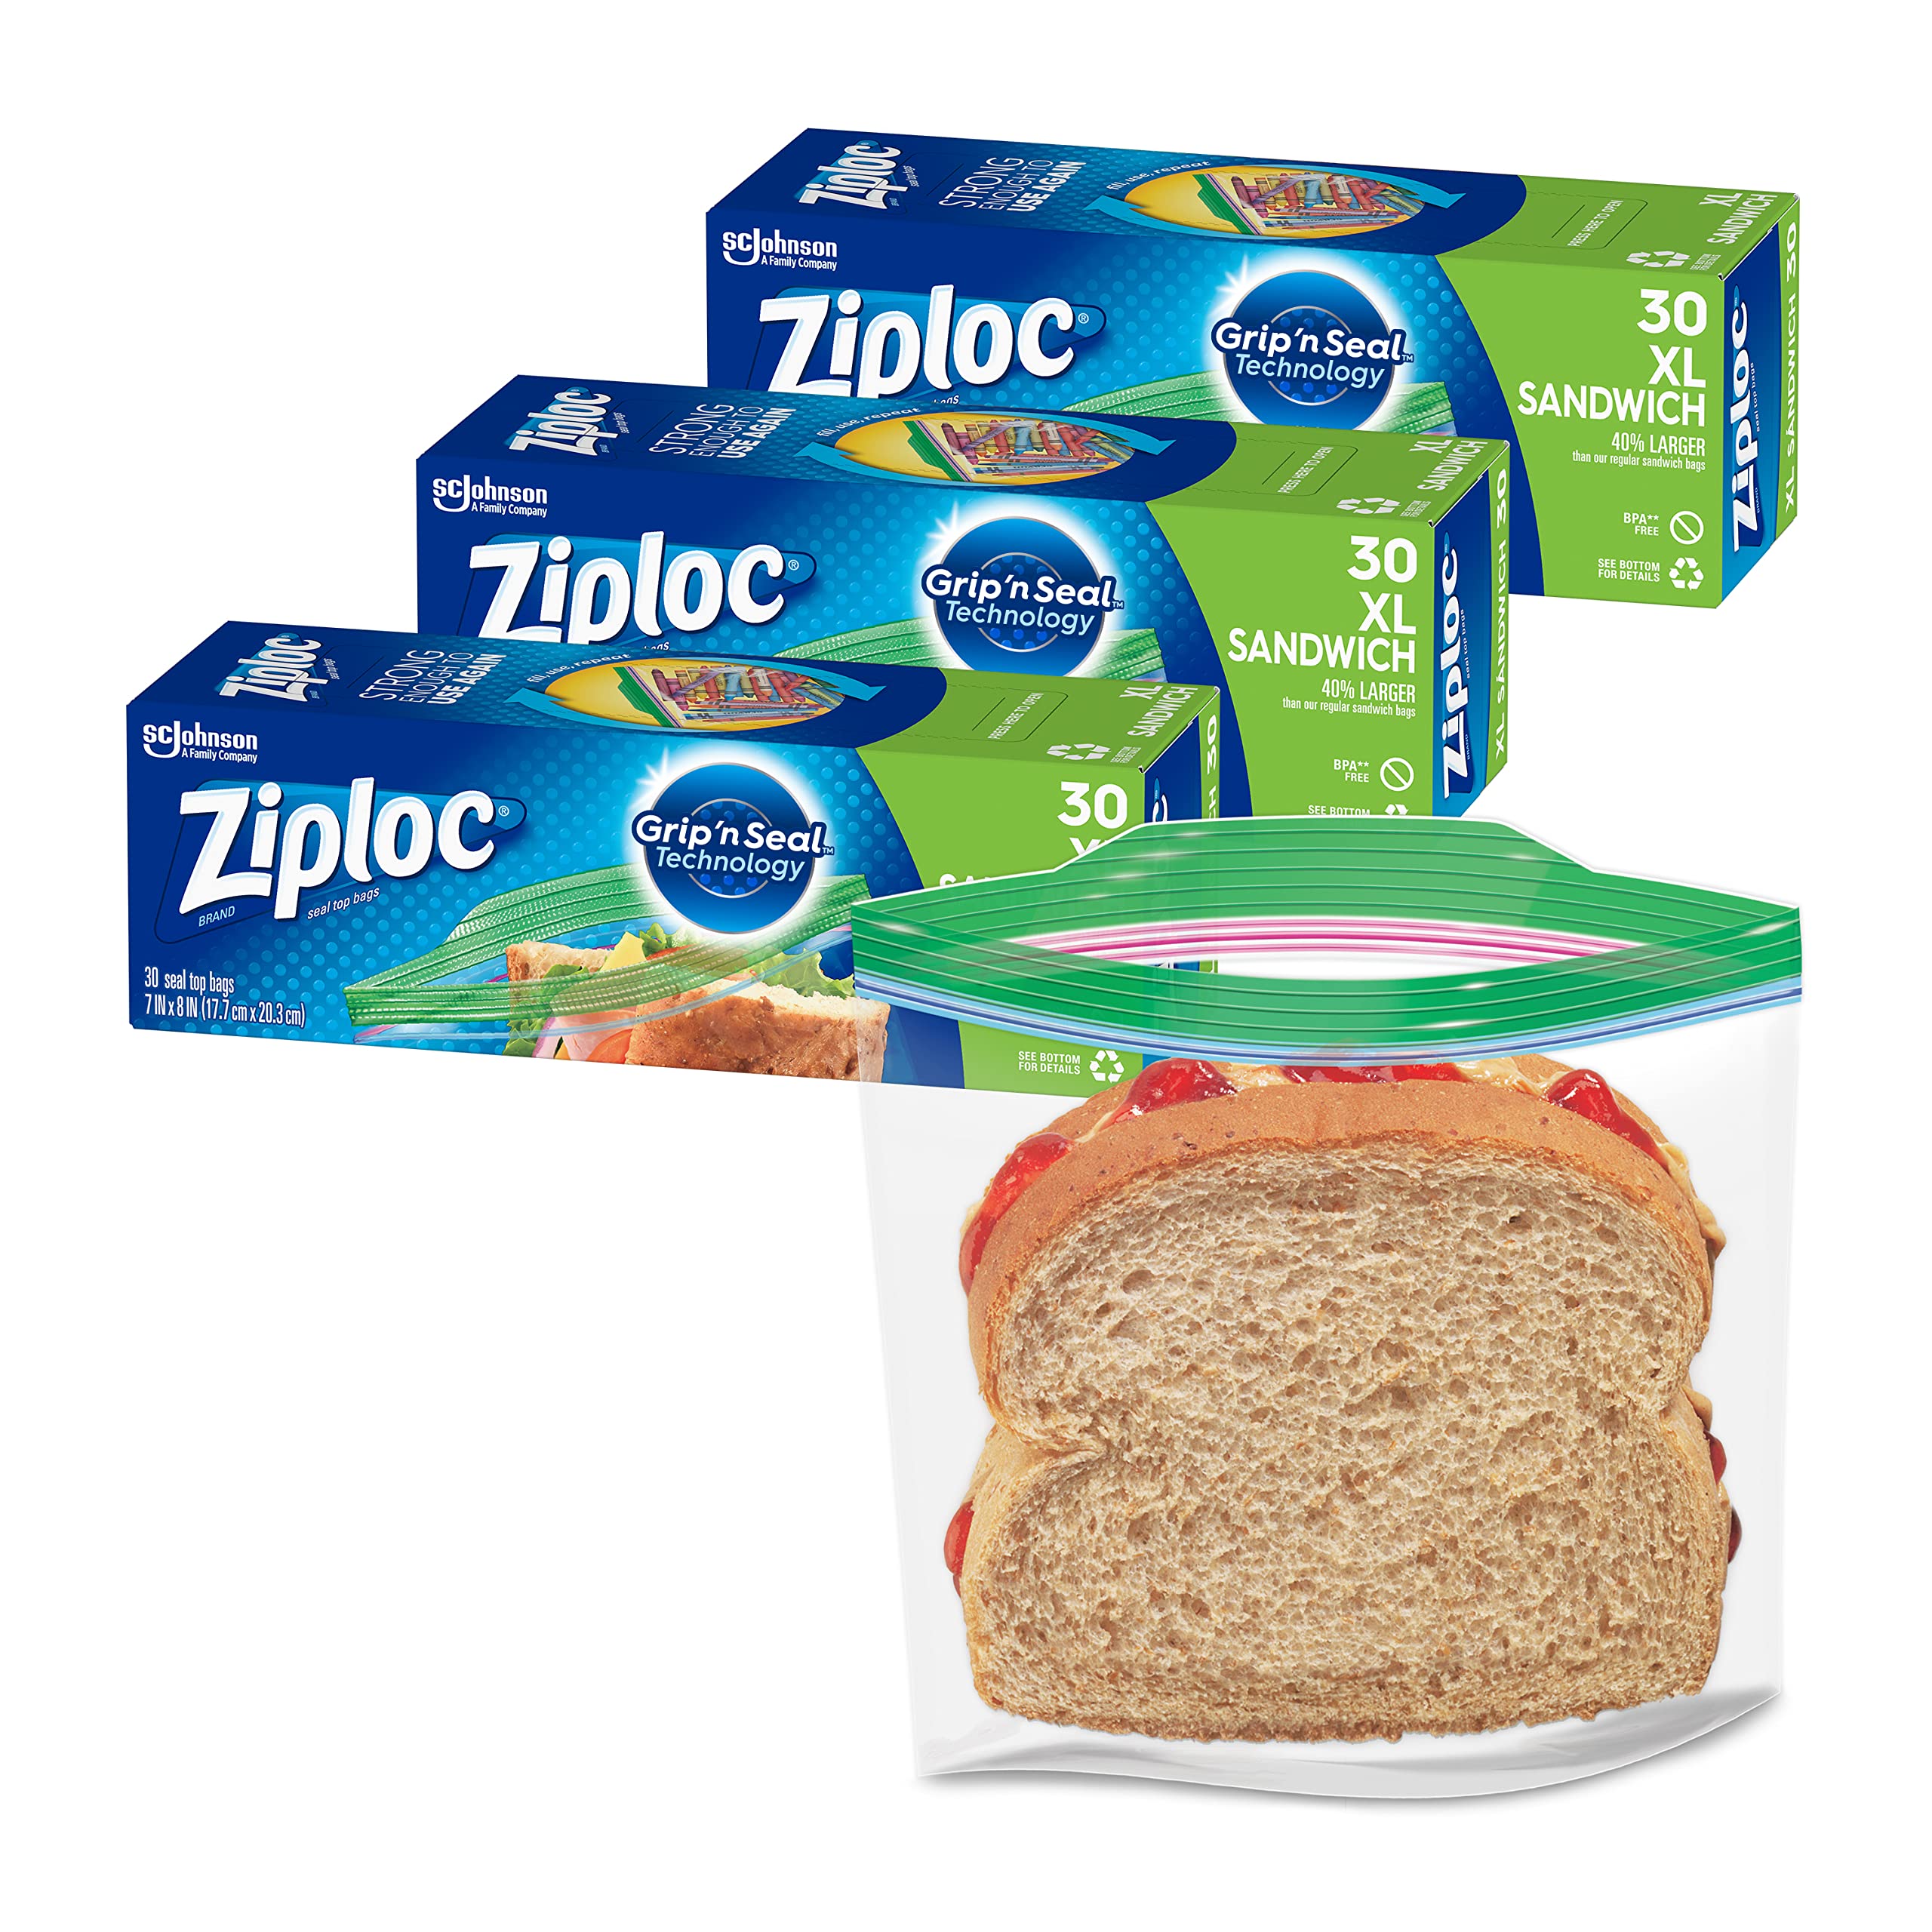 Ziploc® Brand Sandwich Bags, 90 Count 